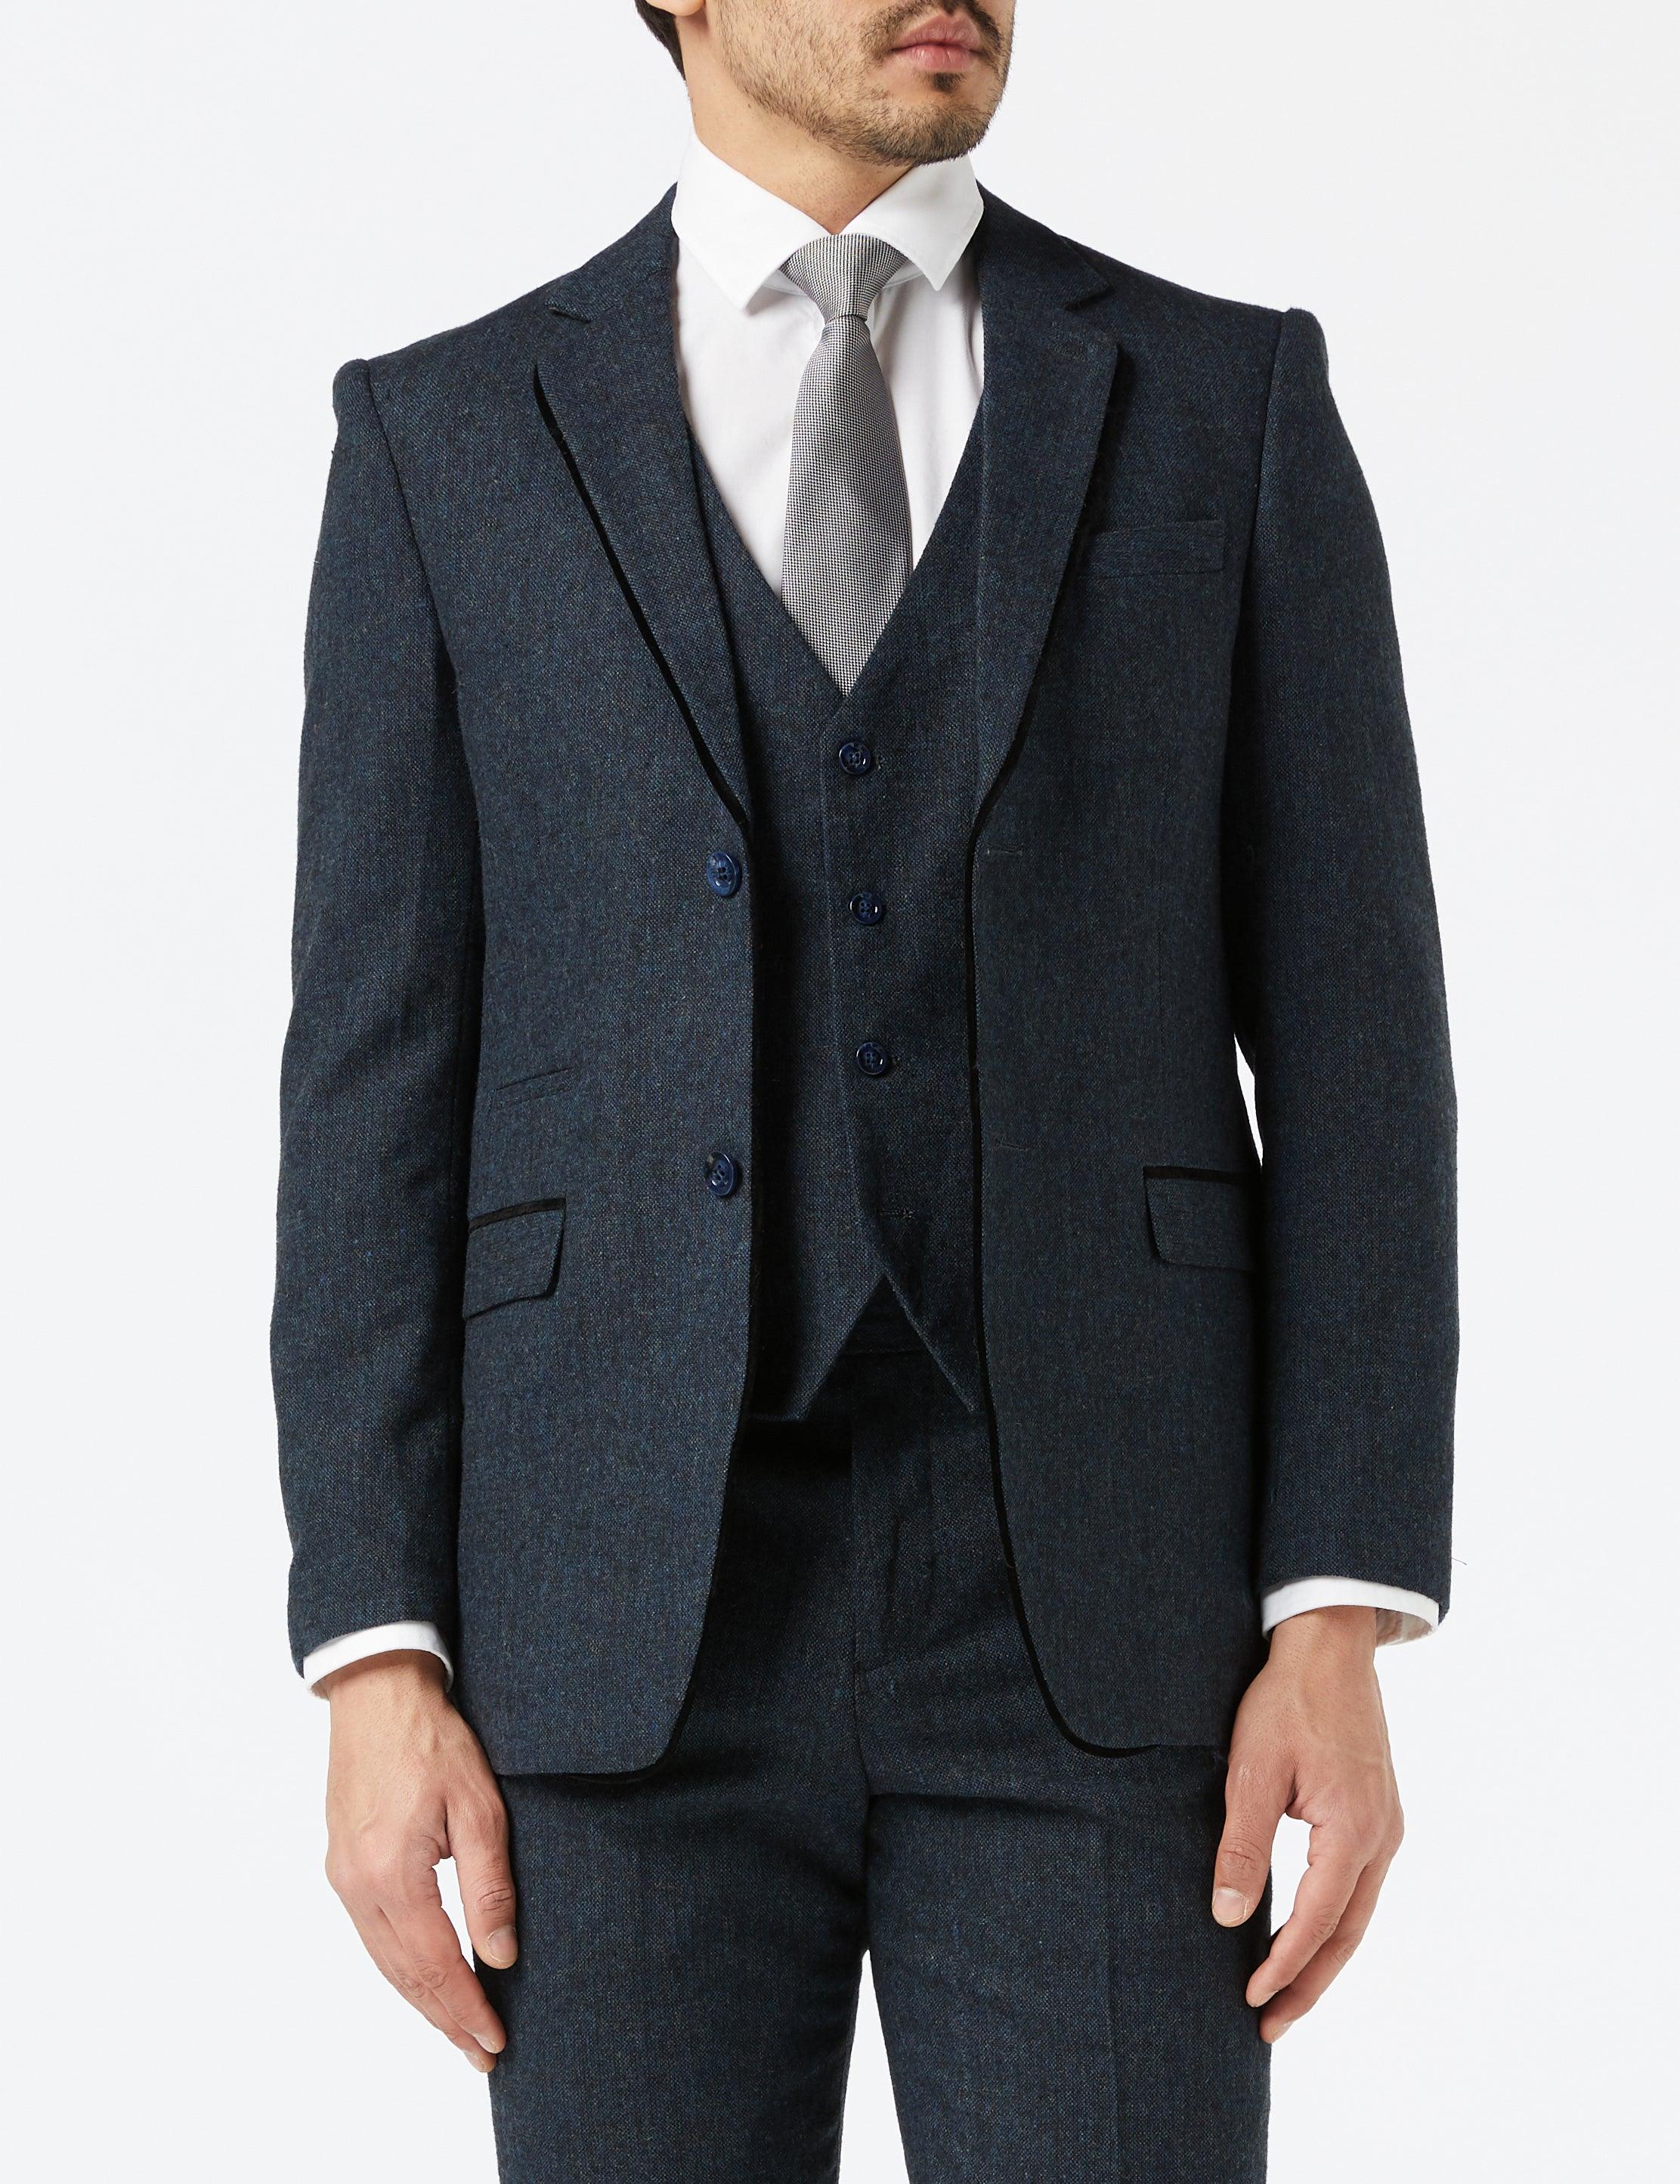 Classic Navy Tweed Suit